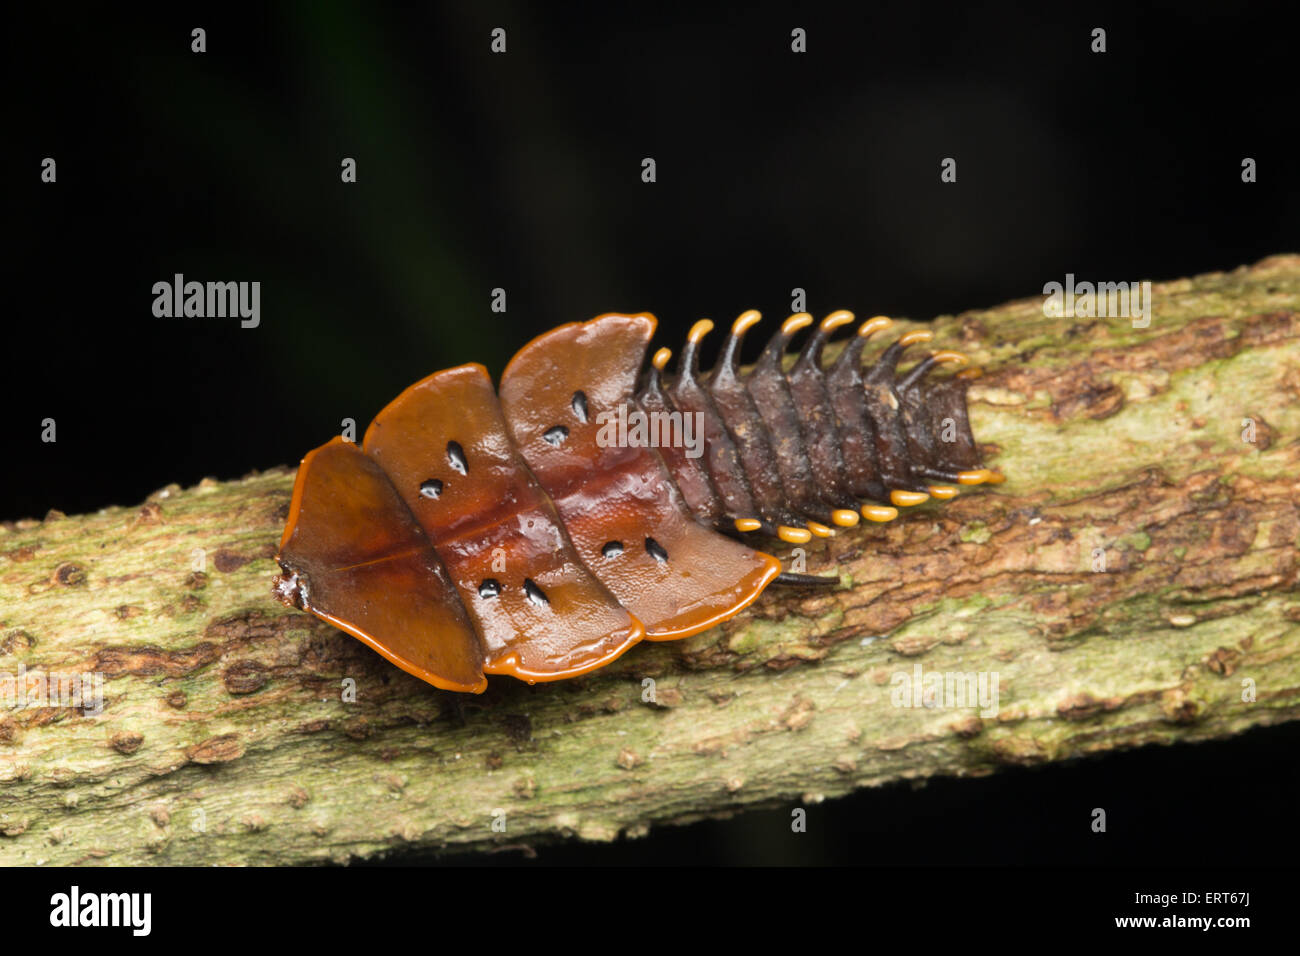 Femme d'un Net-winged beetle communément appelée "trilobite beetle", nommé ainsi en raison de leur forme préhistorique. L'un Banque D'Images